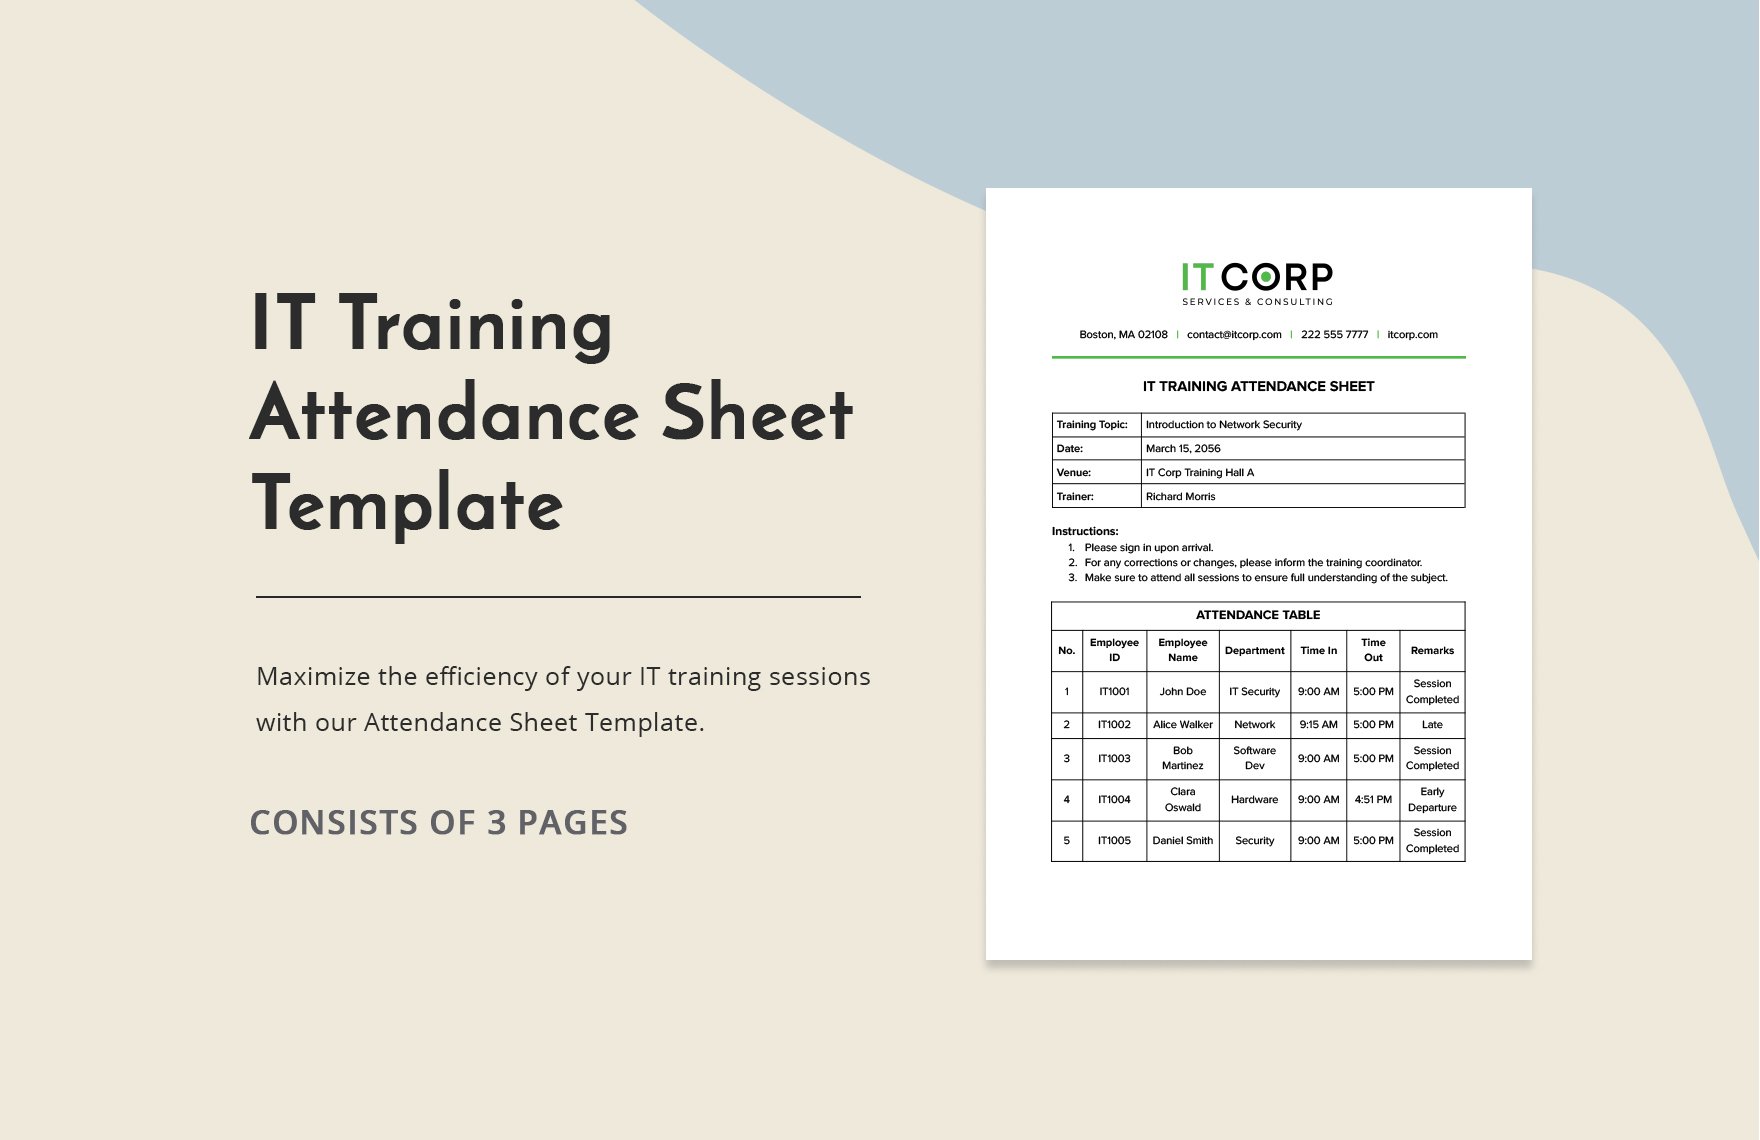 IT Training Attendance Sheet Template